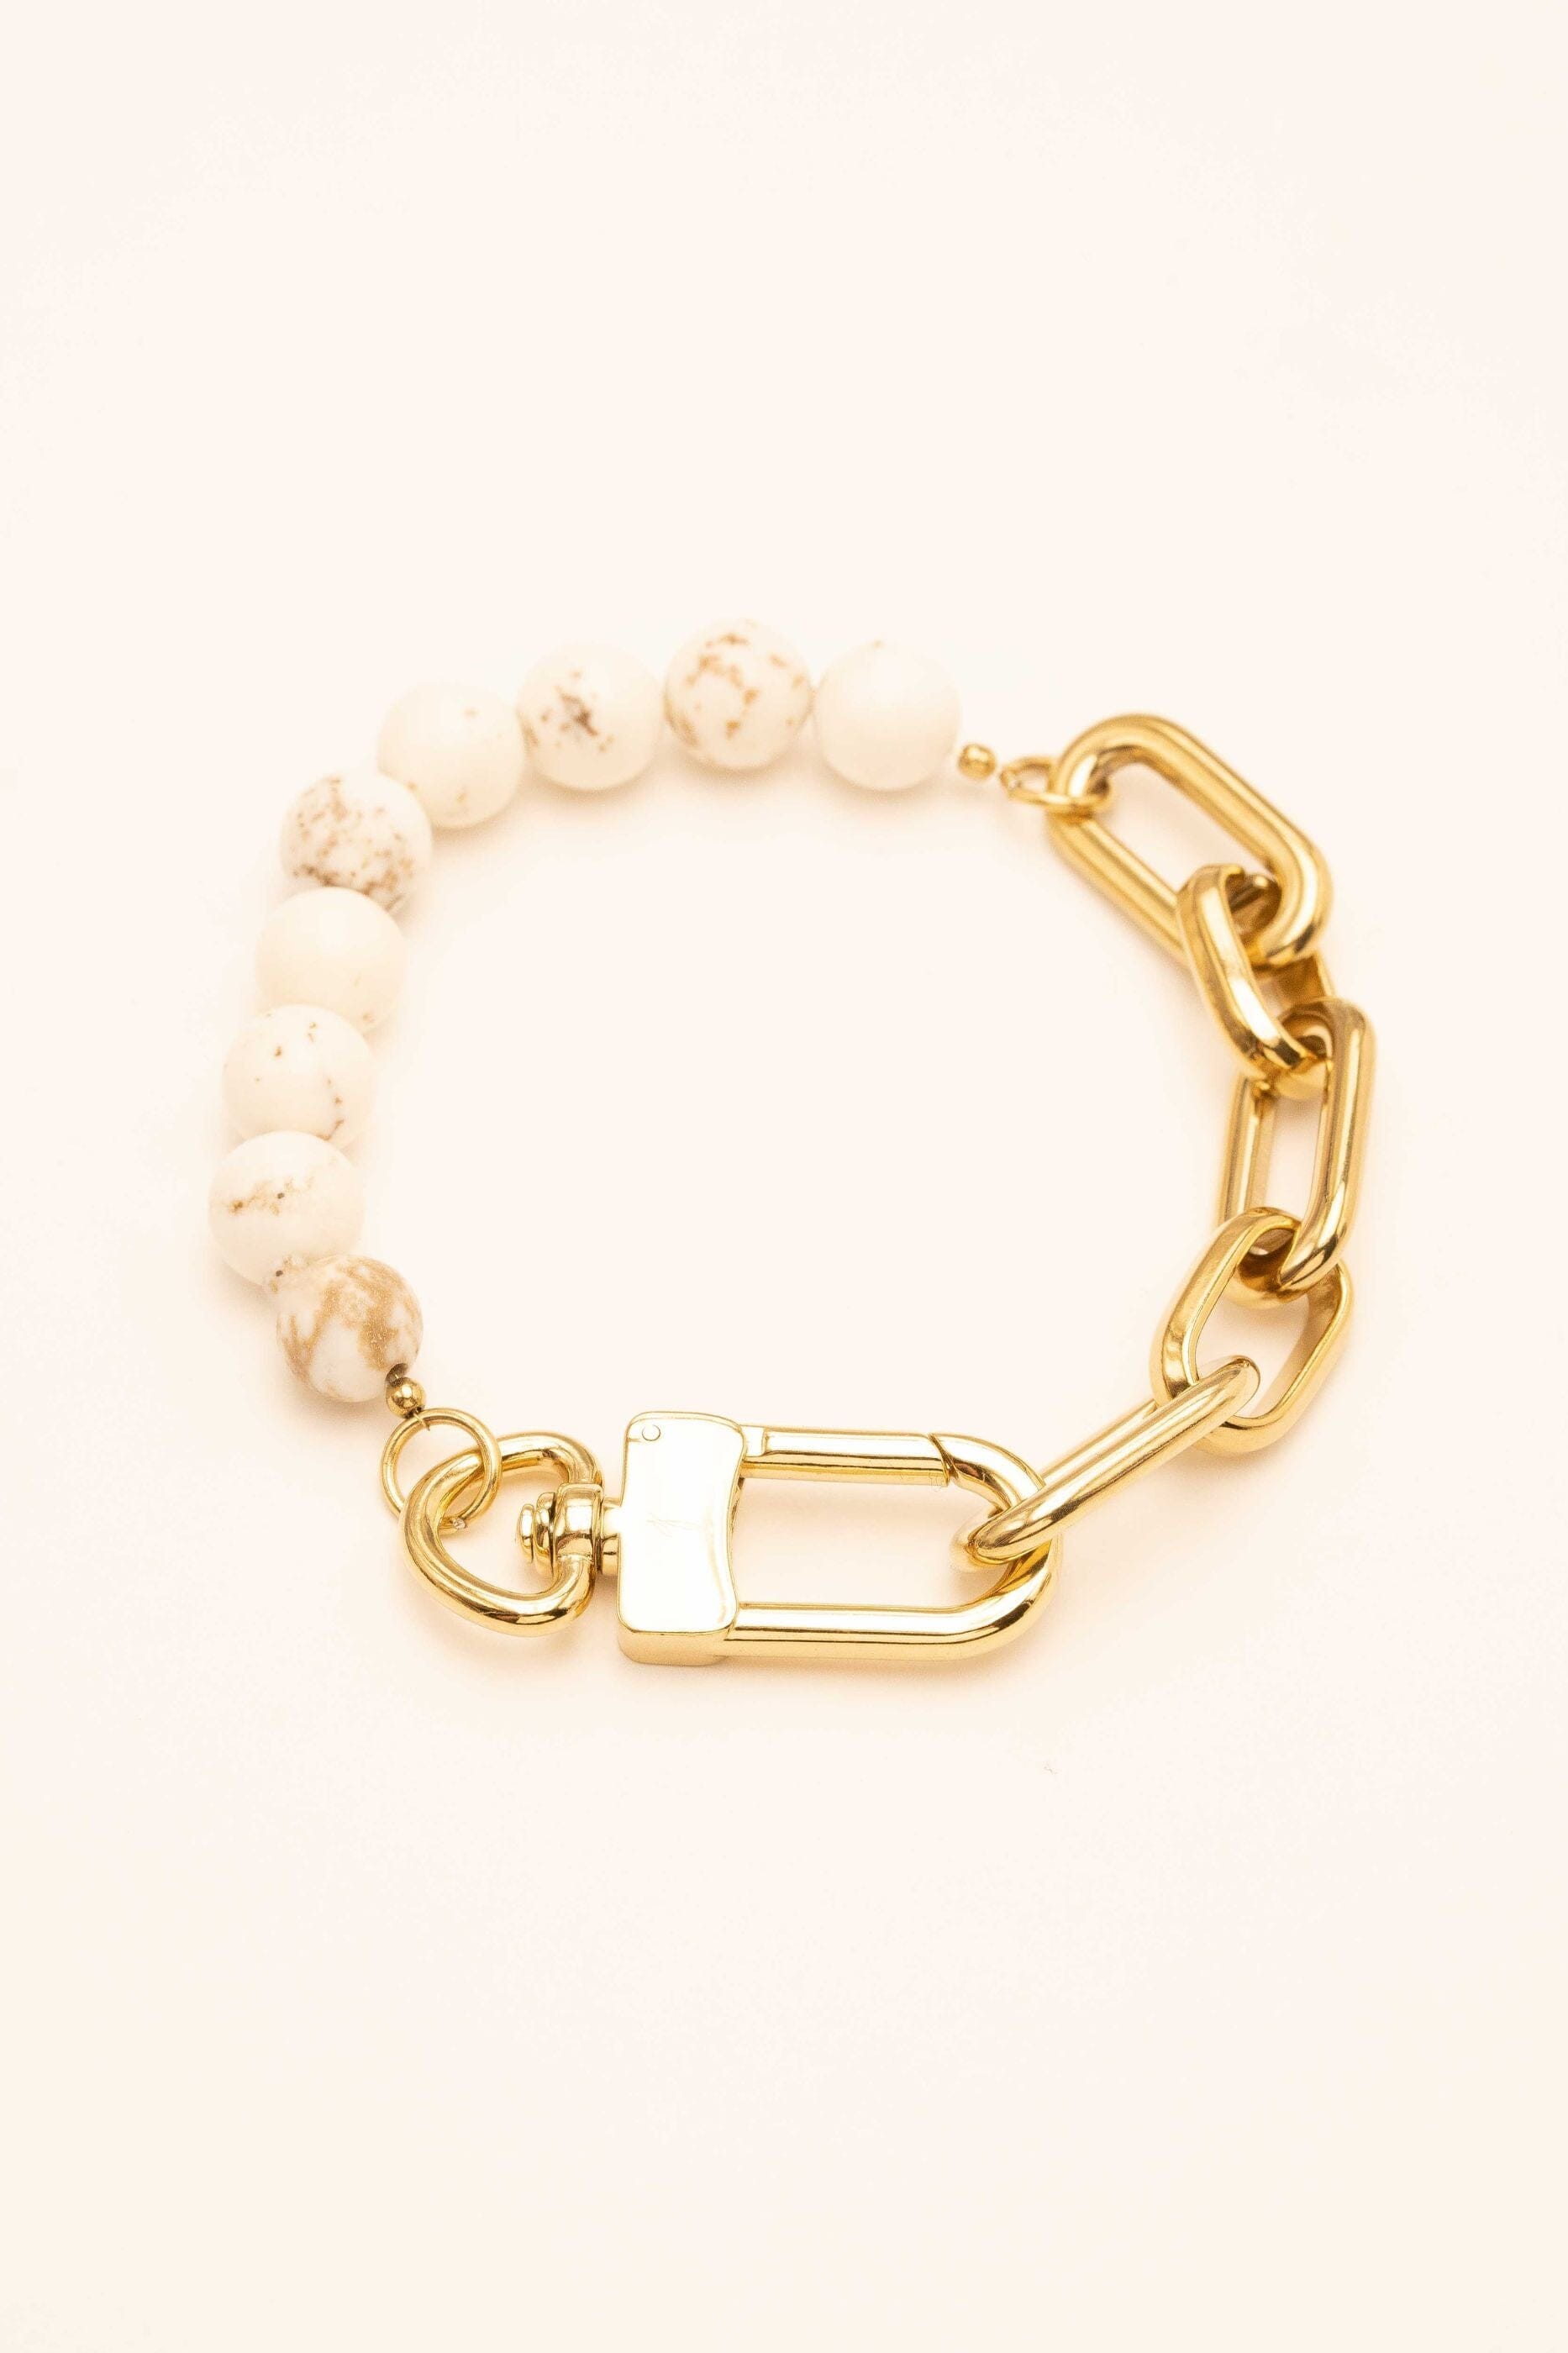 Bracelet Bohm Paris - Kelly bracelet Bohm Paris HOWLITE BLANCHE 